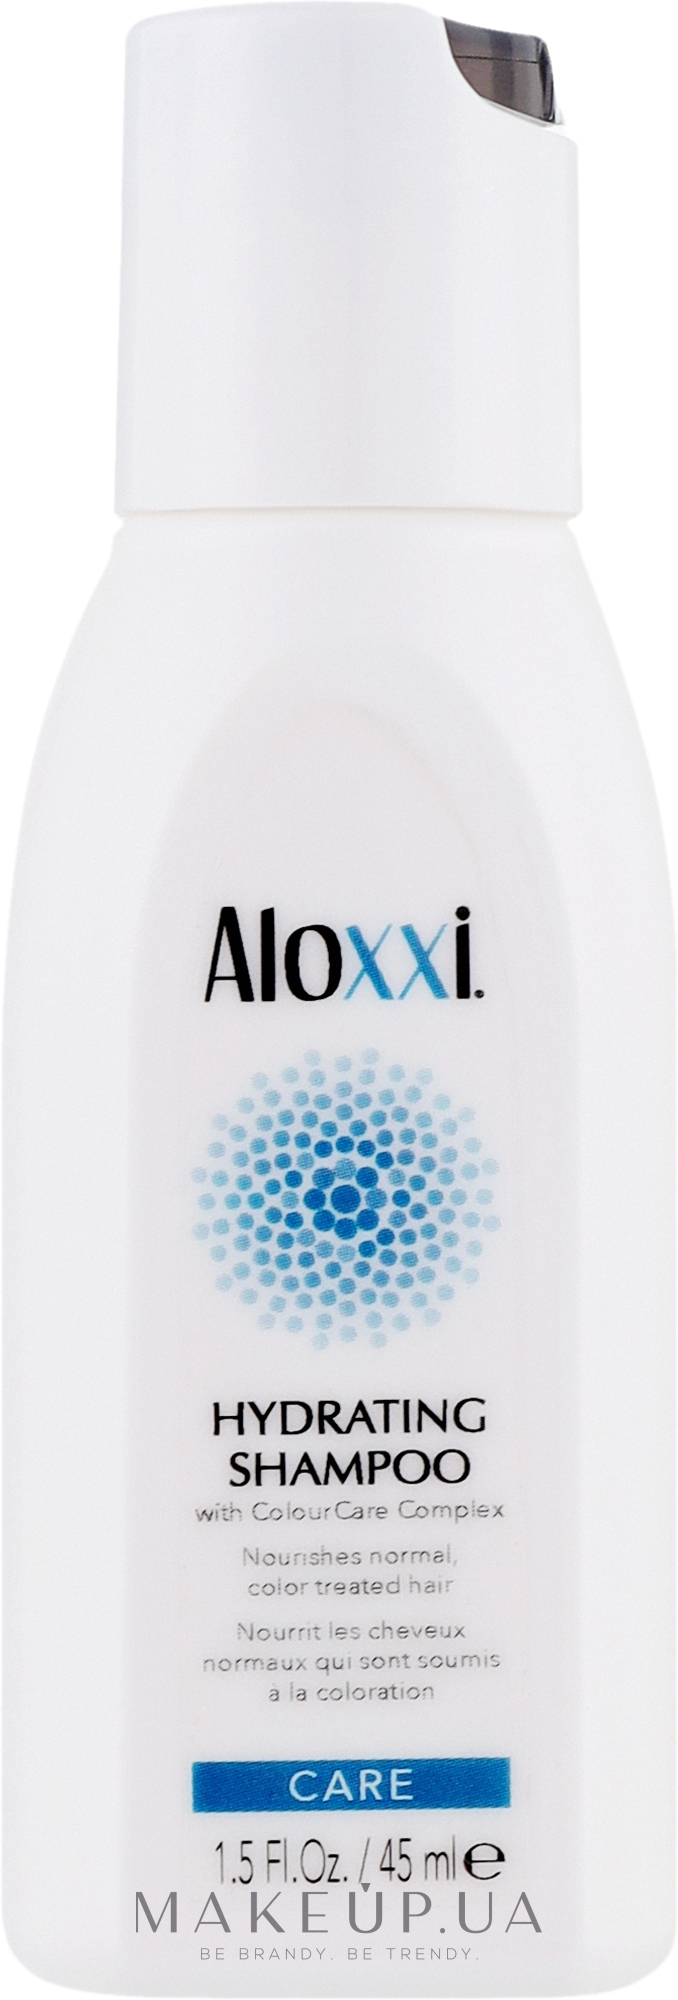 Увлажняющий шампунь для волос - Aloxxi Hydrating Shampoo (мини) — фото 45ml